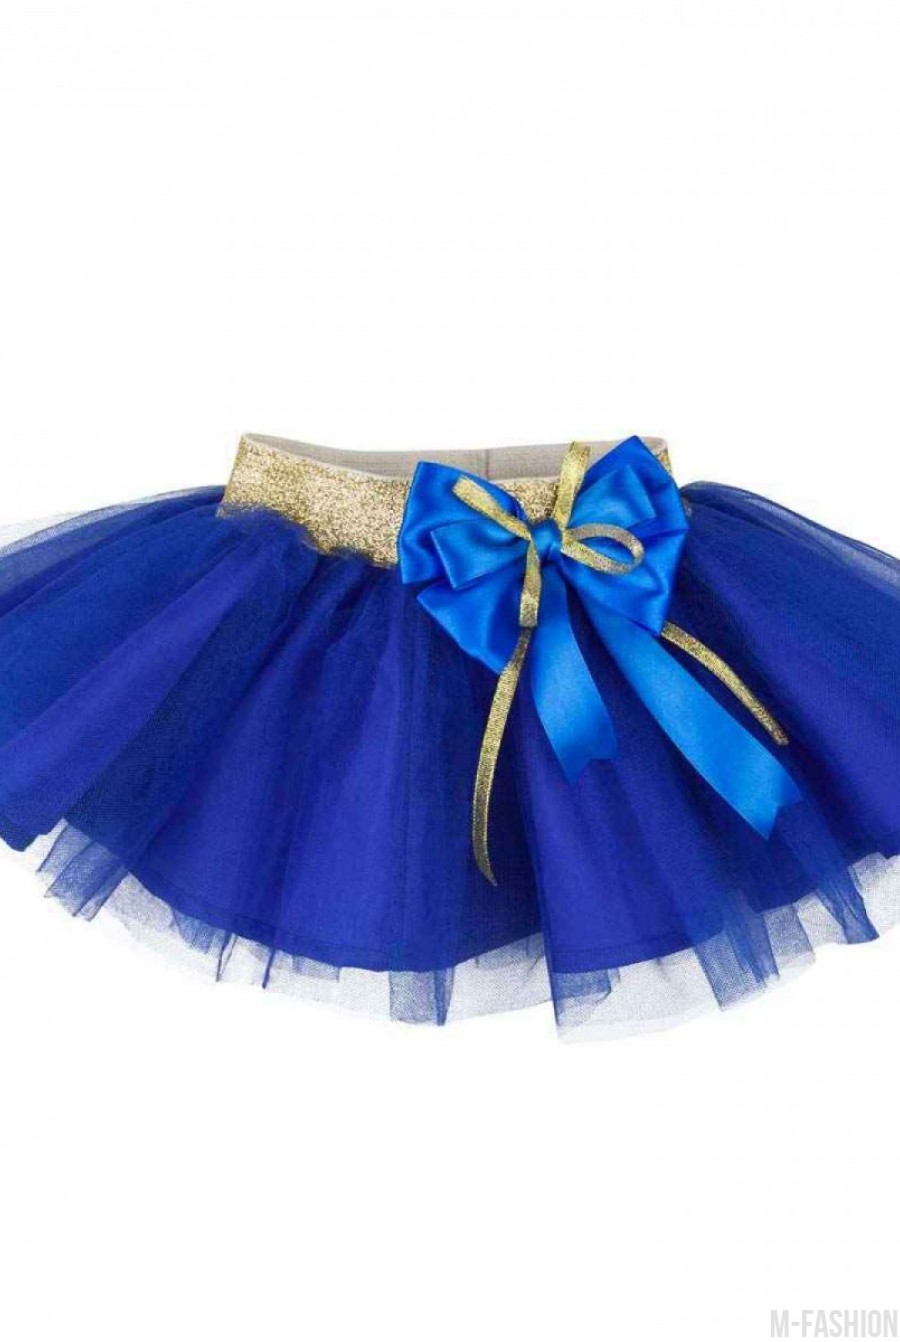 Пышная синяя юбка из тафты с фатином и золотым поясом с бантом - Фото 1